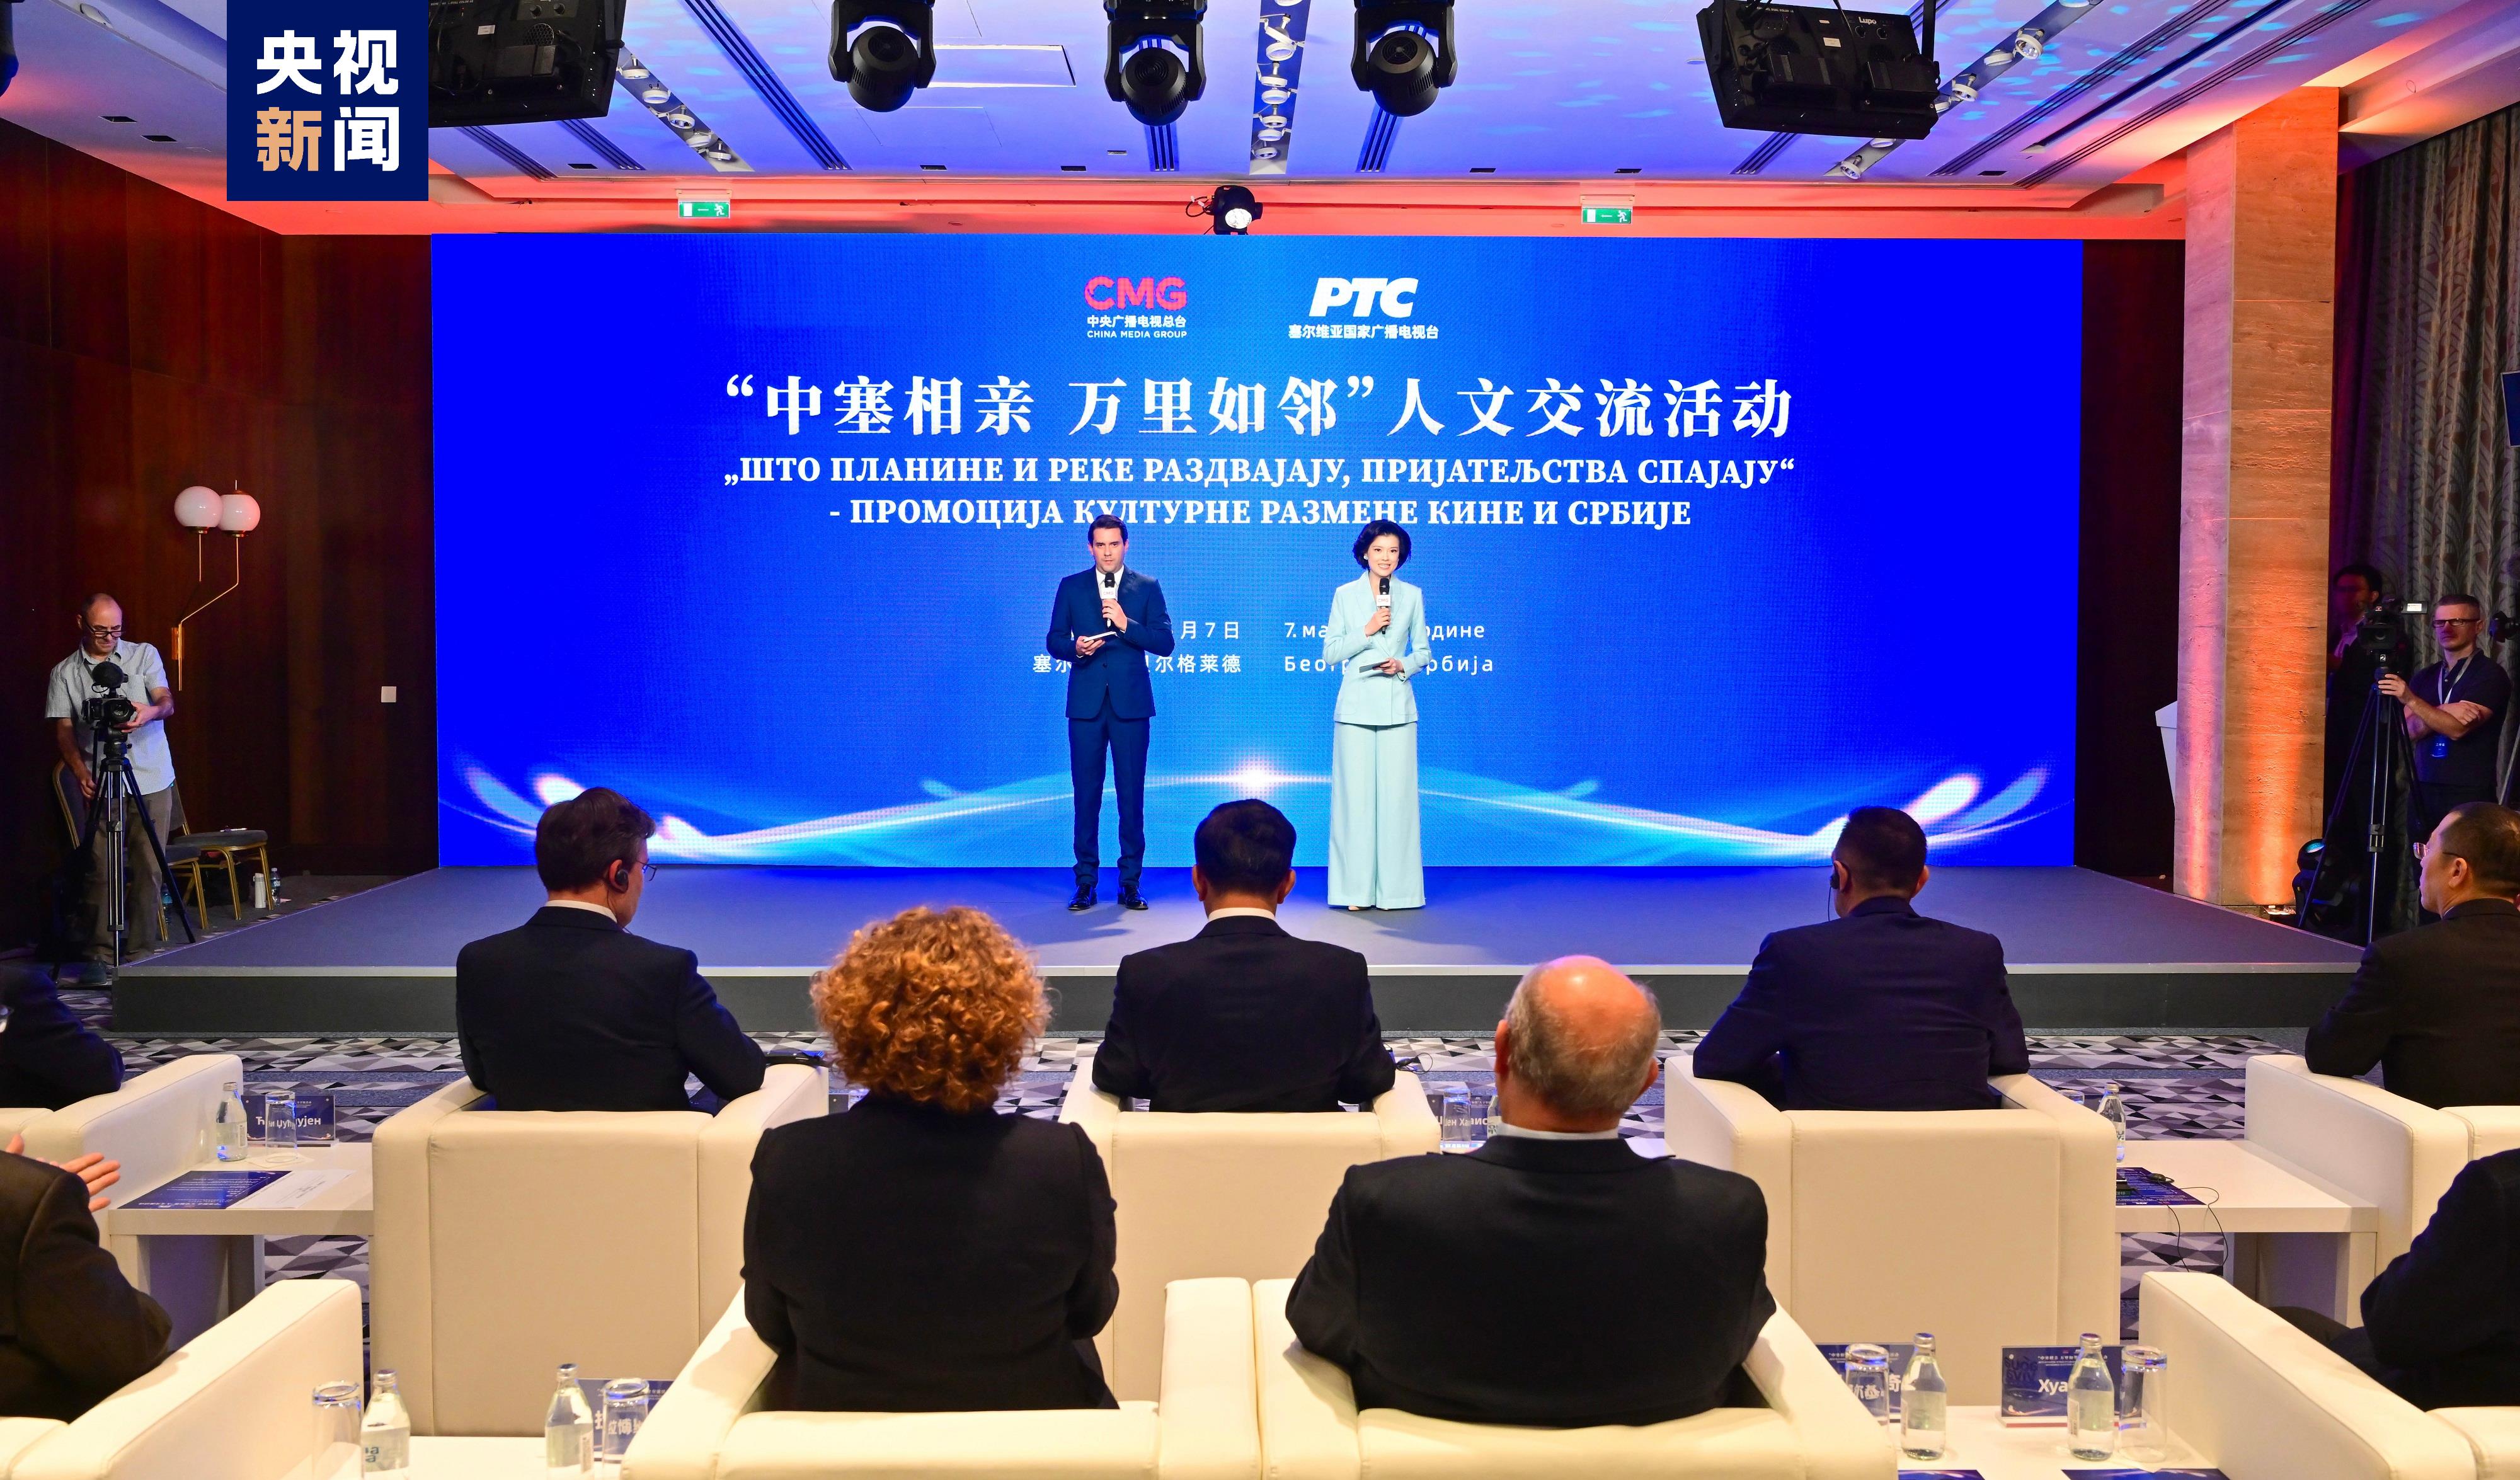 “चीन र सर्बियाको मित्रता छिमेकजस्तै” सांस्कृतिक आदनप्रदान कार्यक्रम